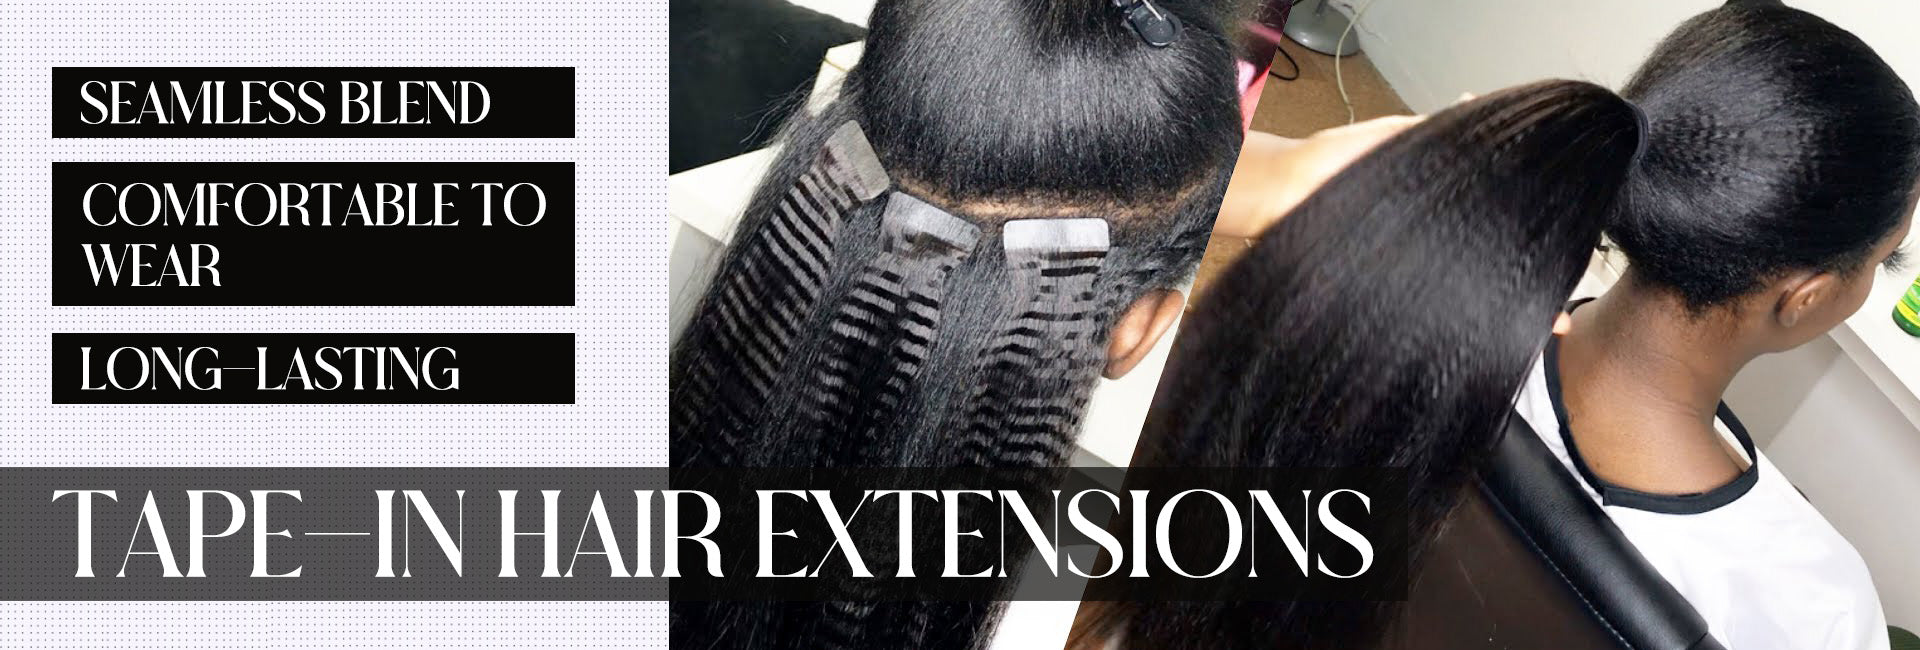 eayonhair tape in hair extensions